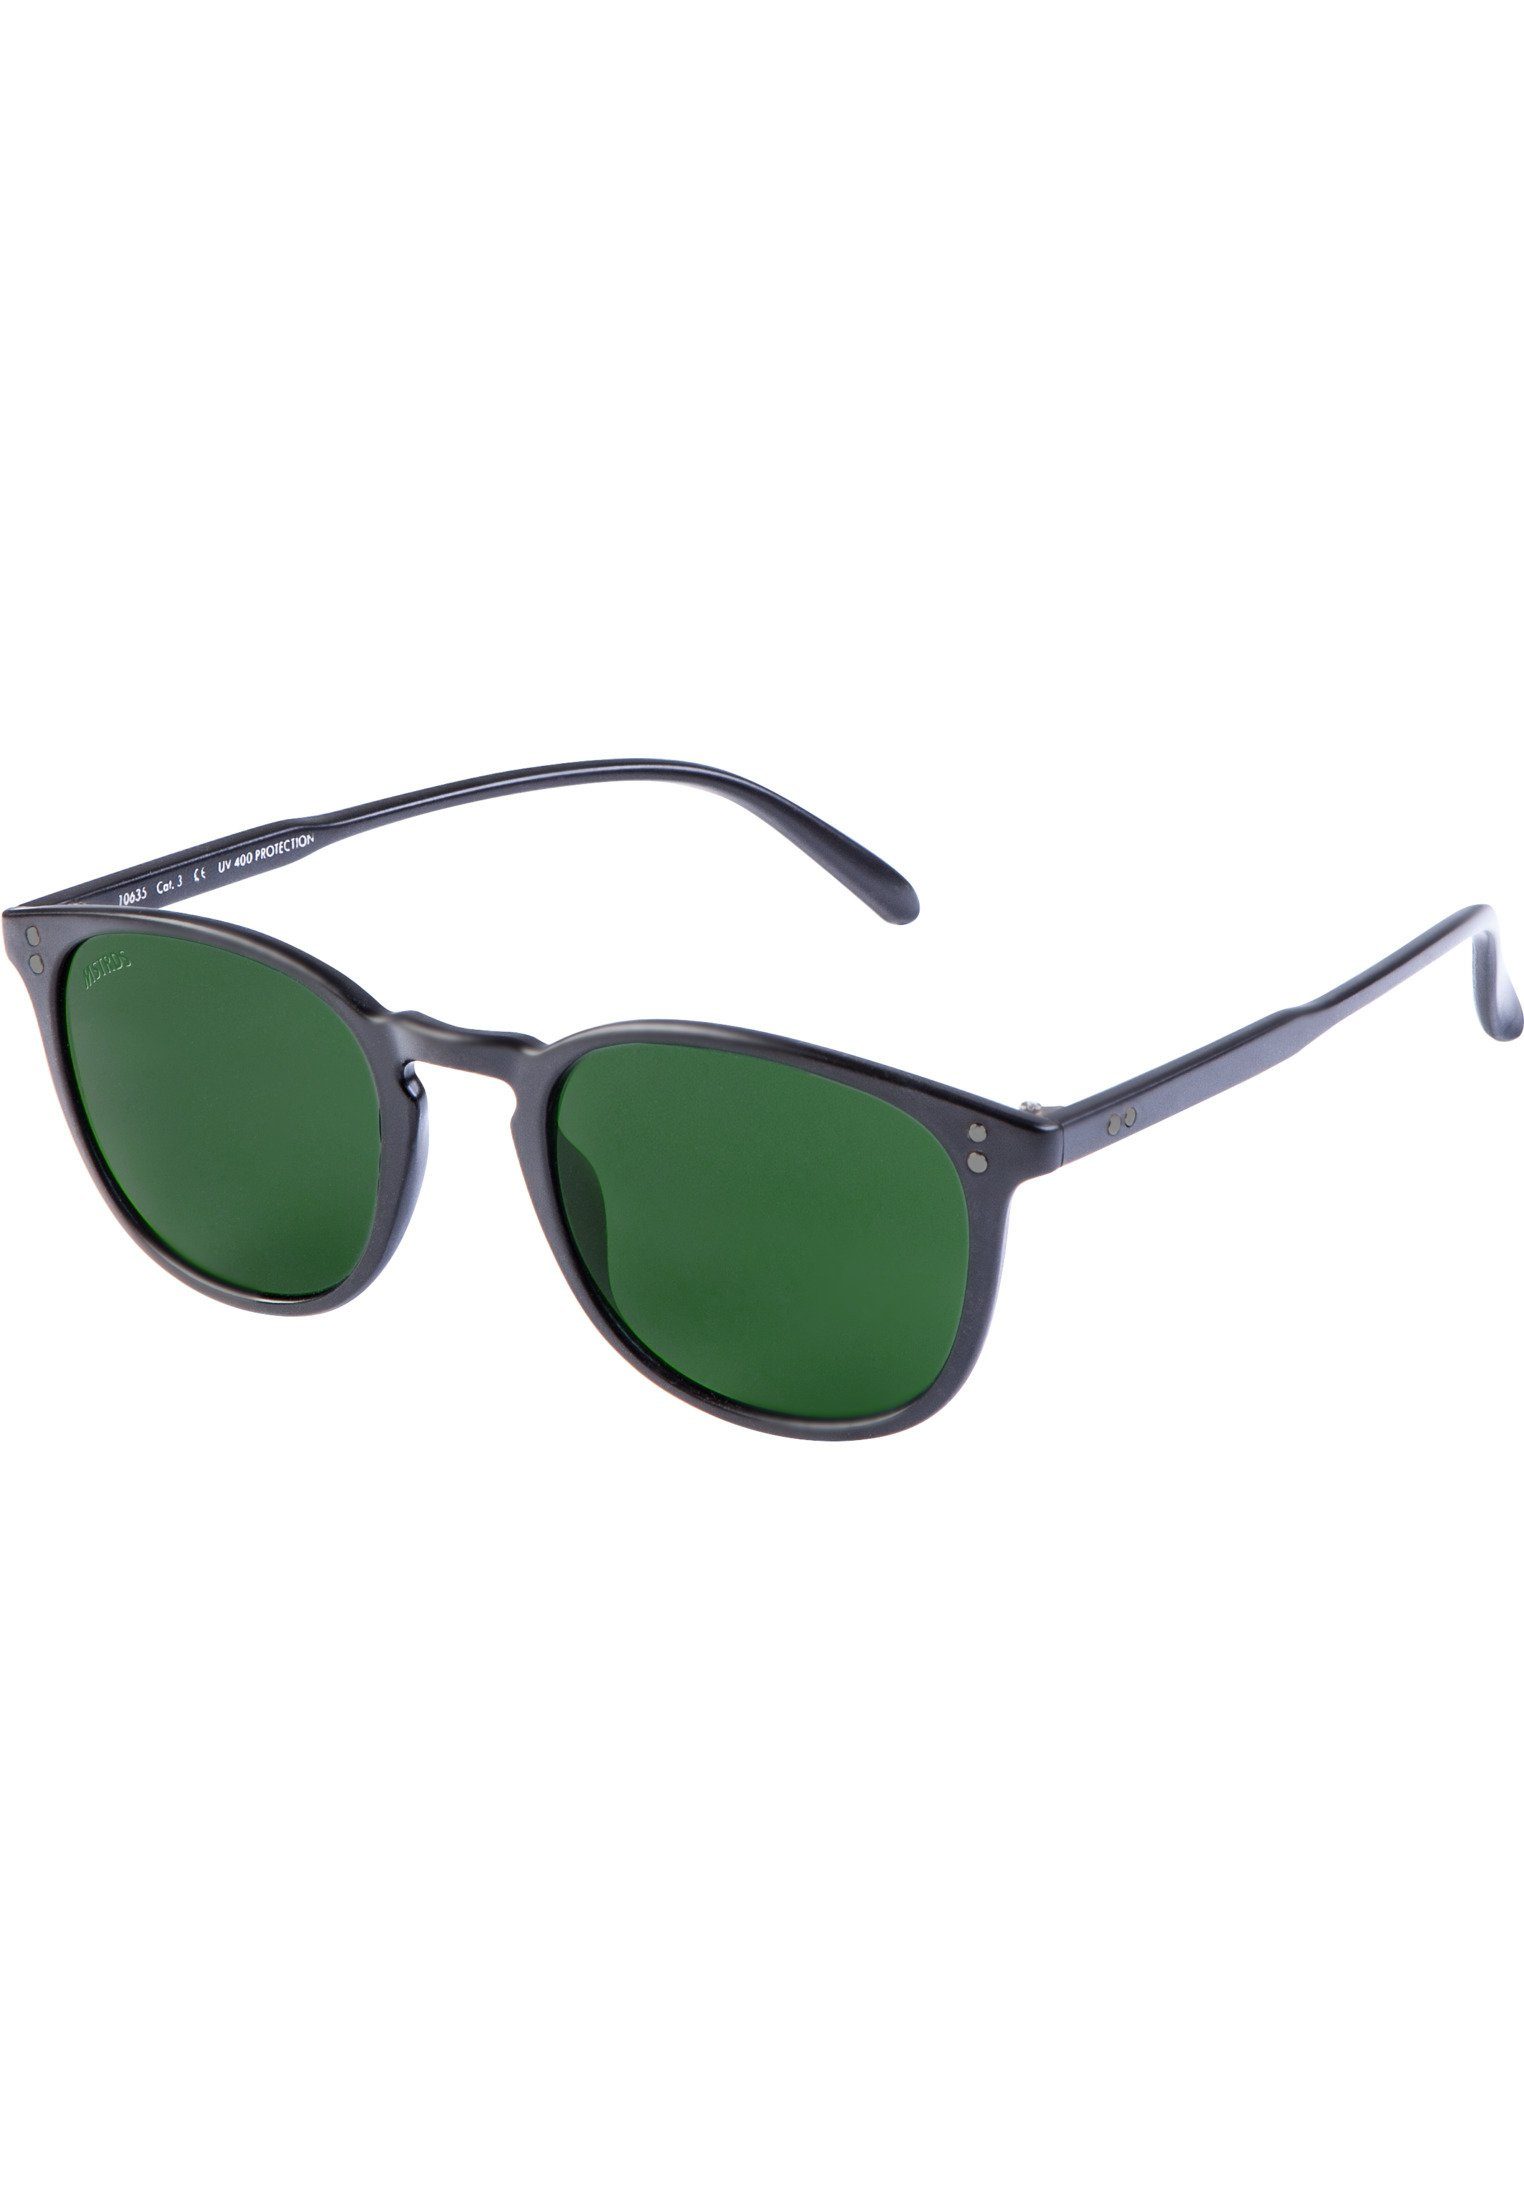 blk/grn Accessoires MSTRDS Arthur Sonnenbrille Sunglasses